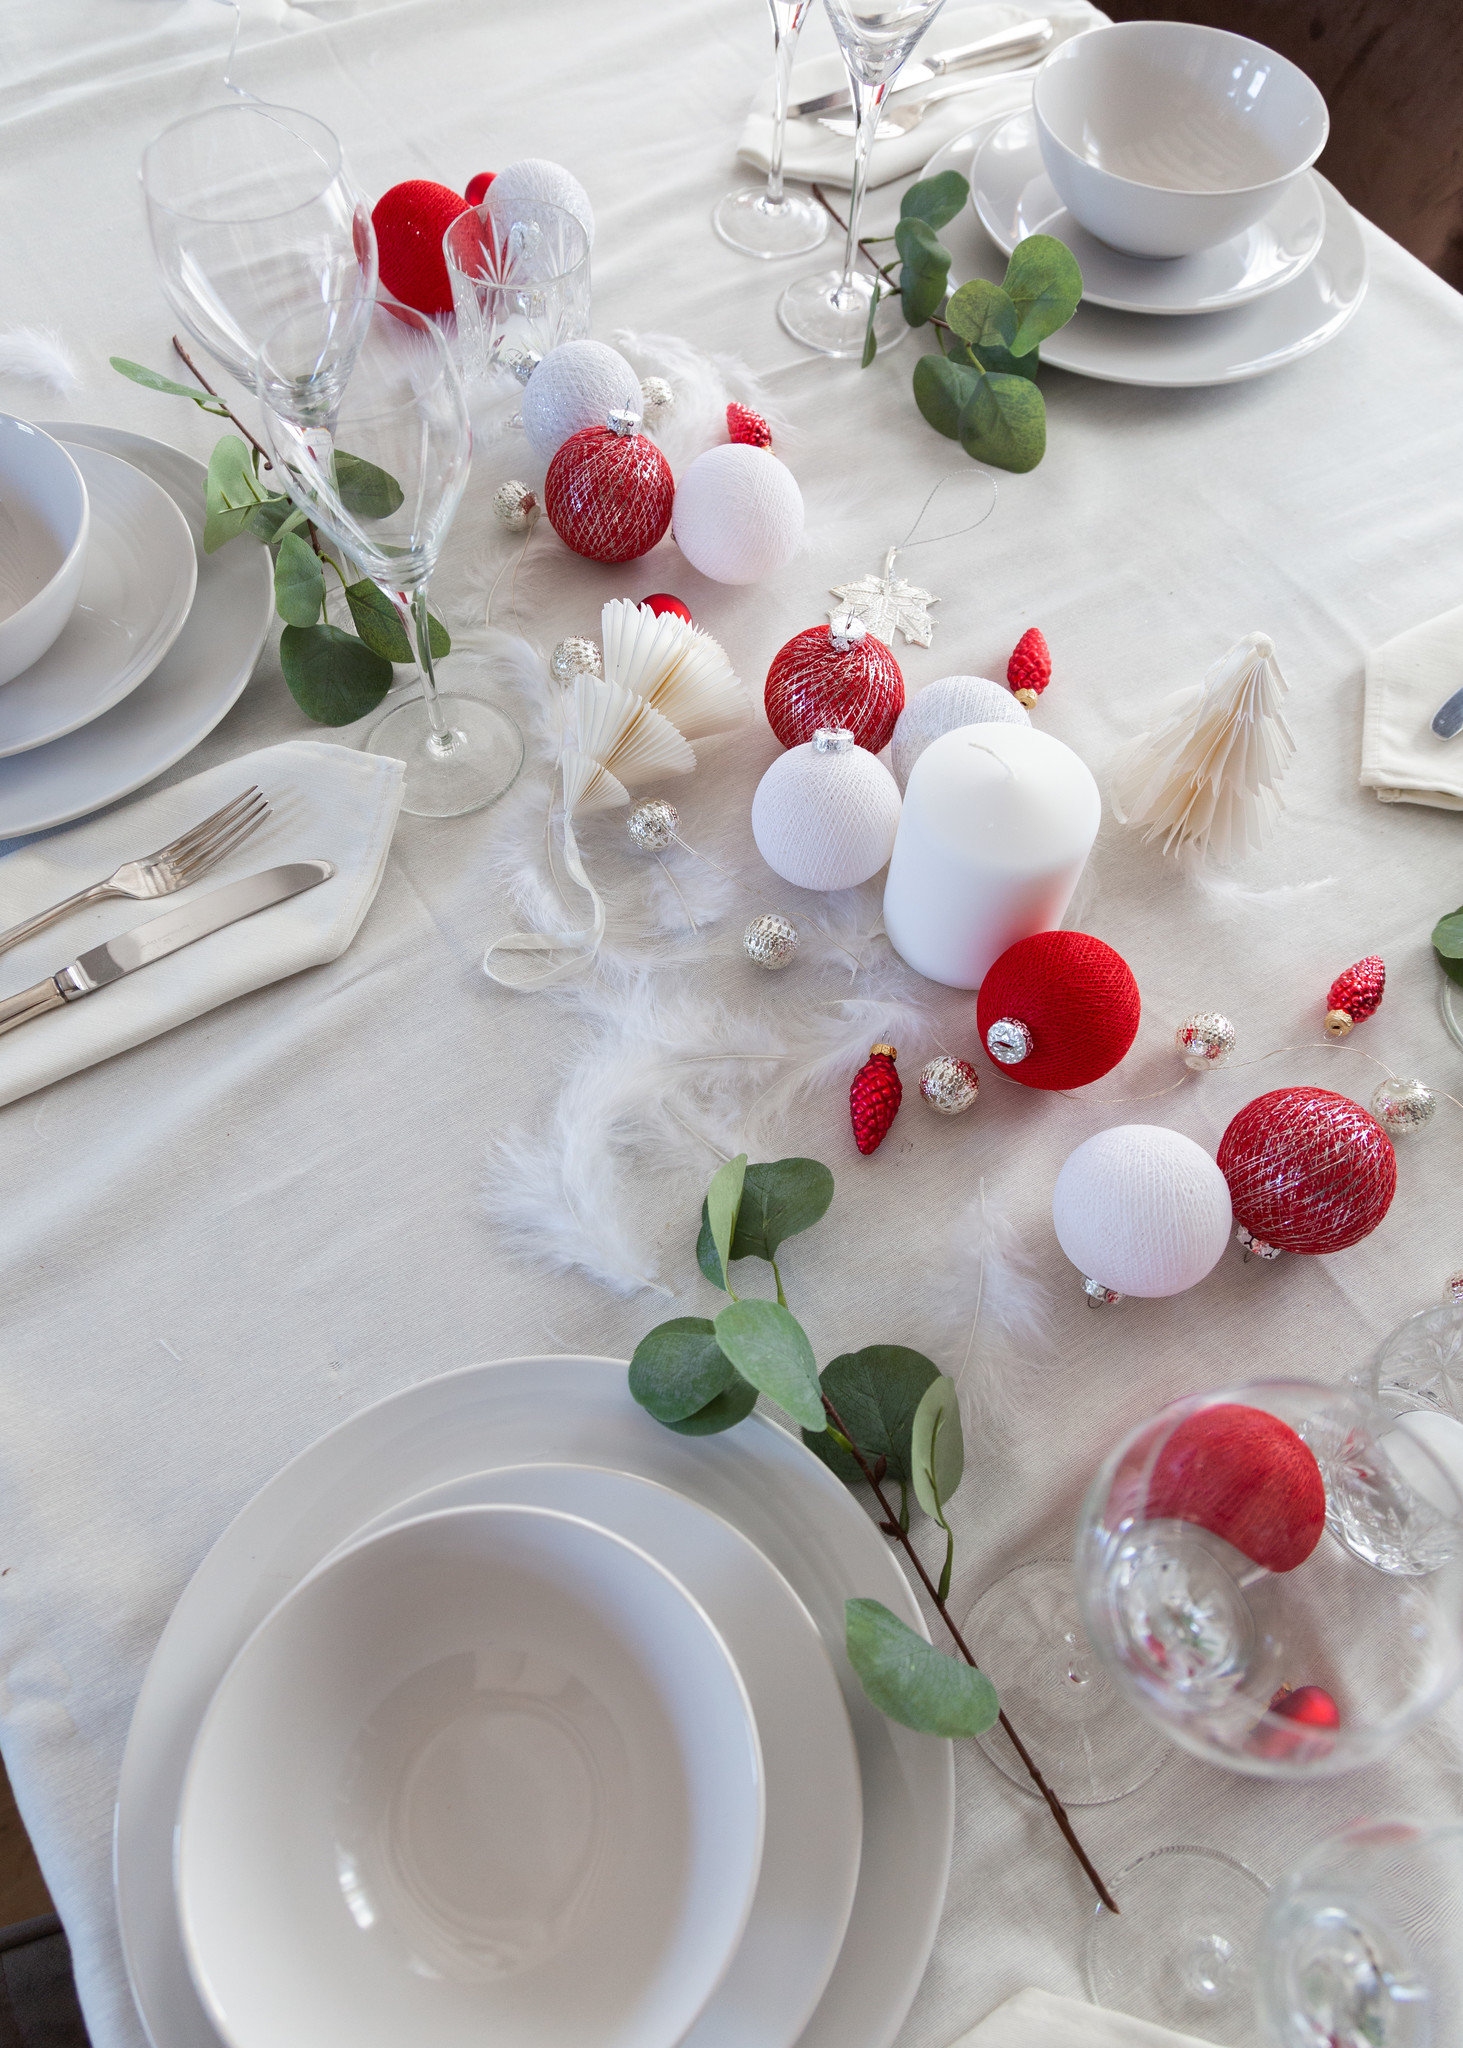 Hoe creëer je een gezellige tafelsetting tijdens de feestdagen?